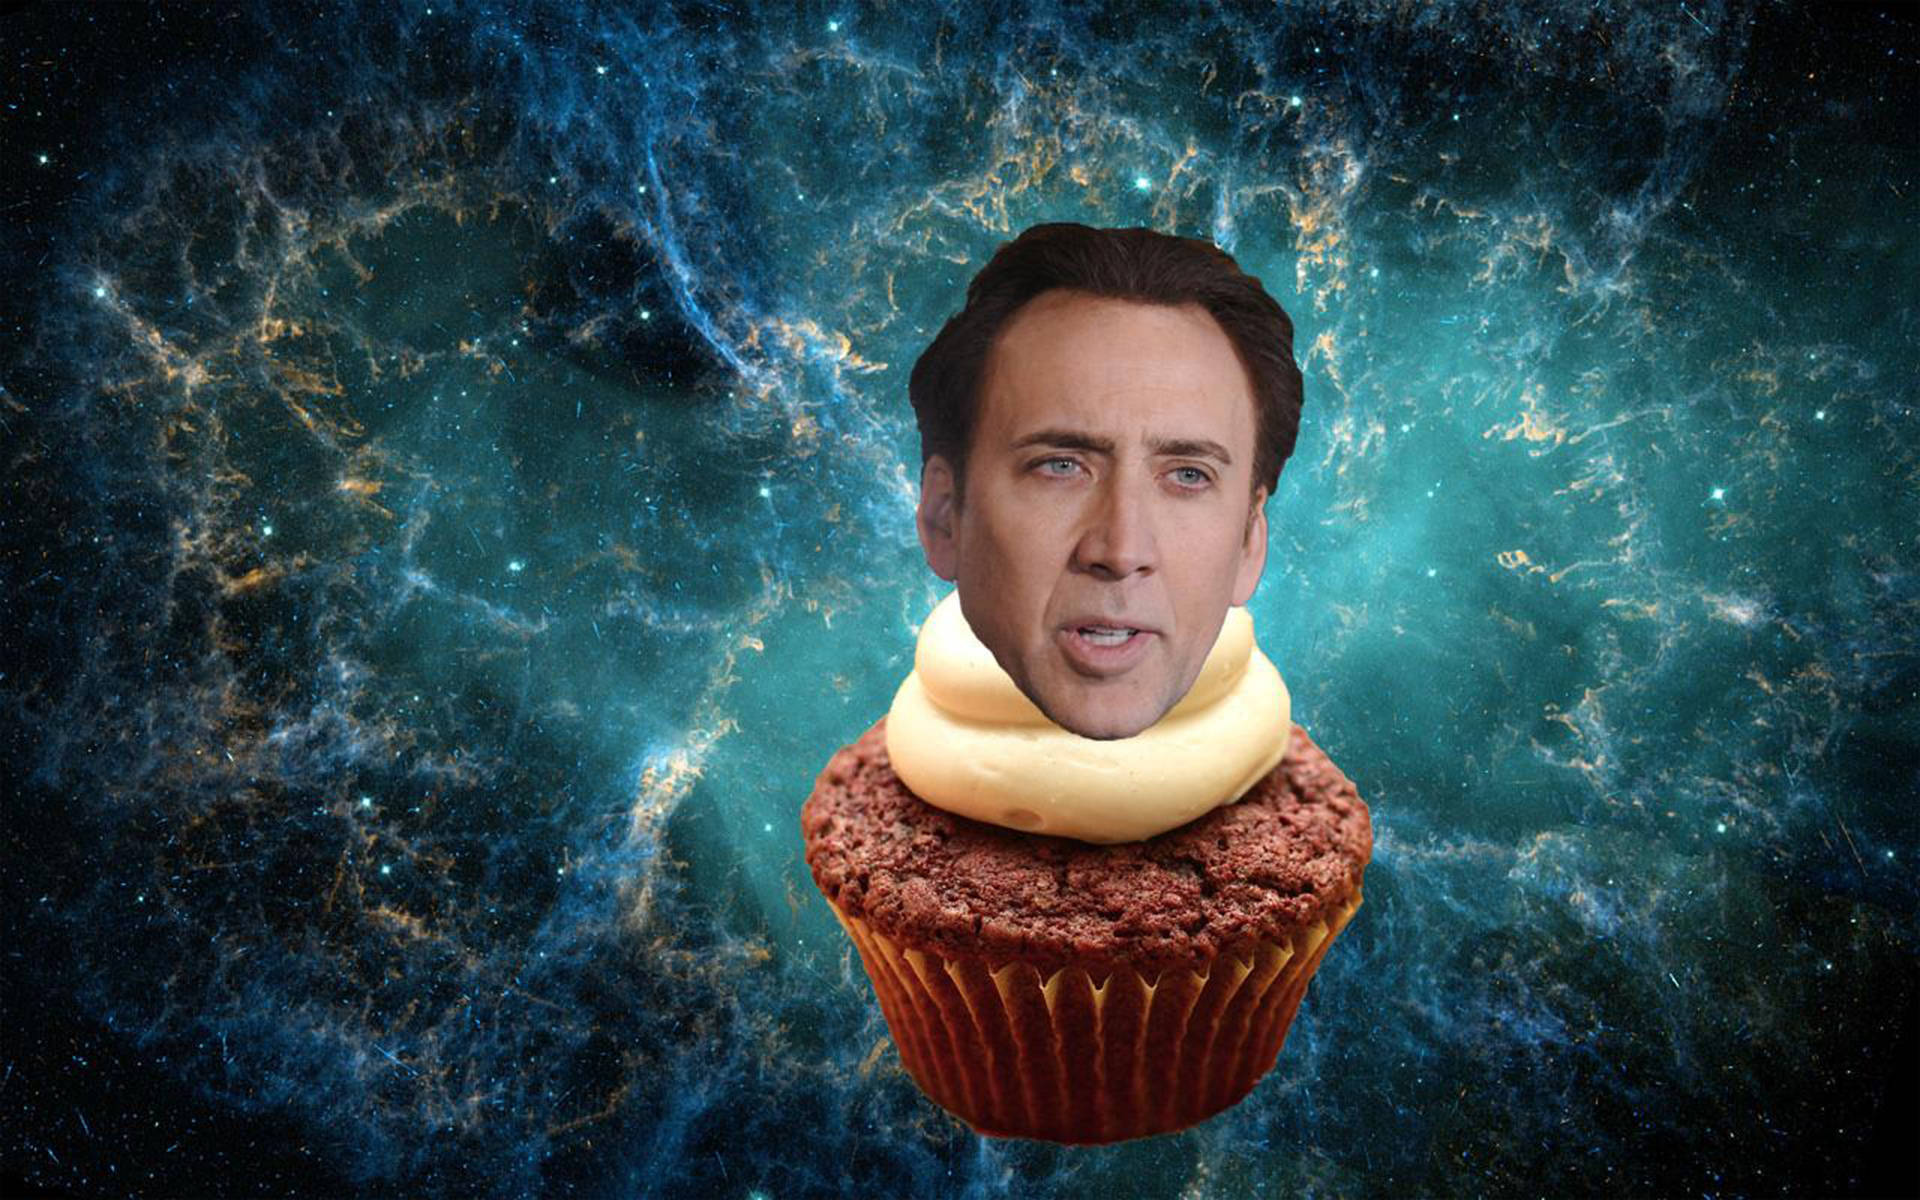 Ritual Se tilbage mirakel Download Nicolas Cage Meme Cosmic Cupcake Wallpaper | Wallpapers.com